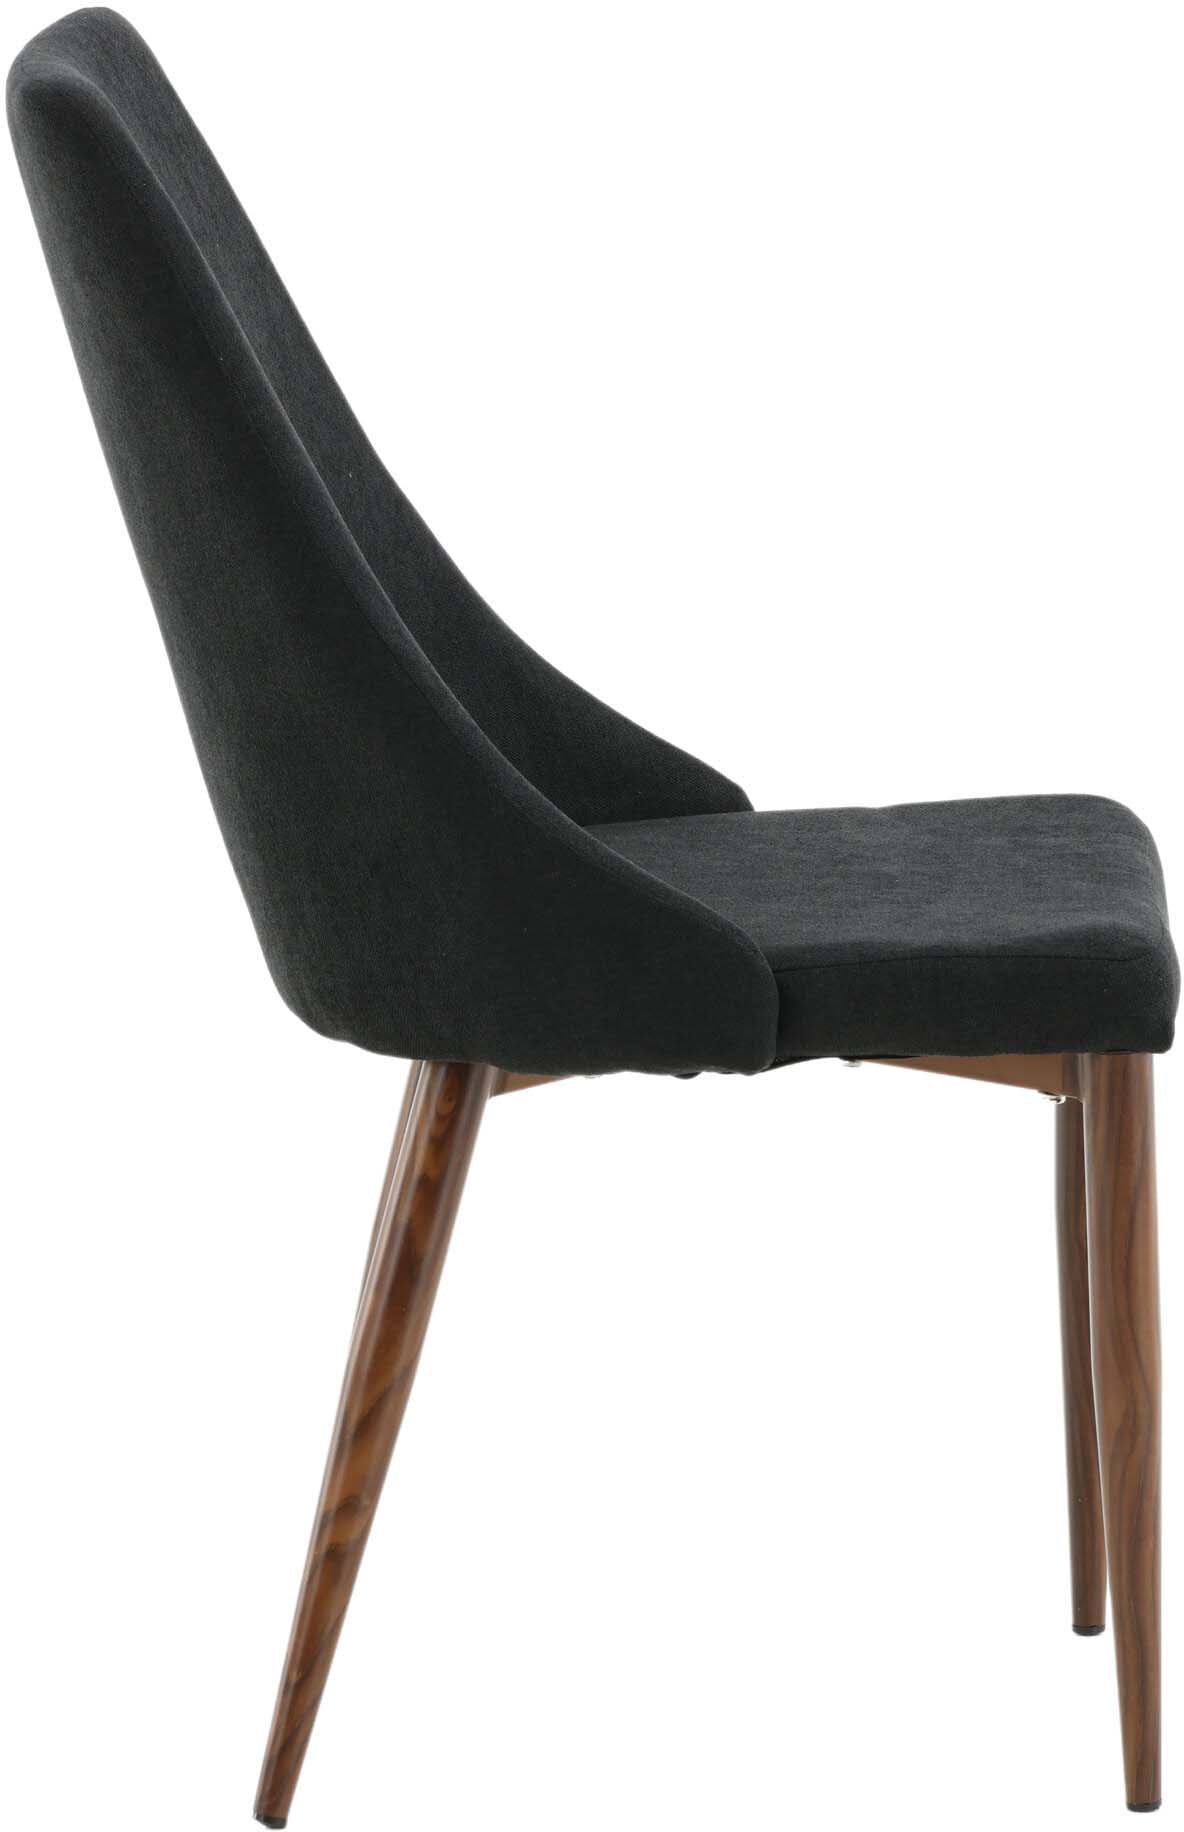 Leone Stuhl in Schwarz präsentiert im Onlineshop von KAQTU Design AG. Stuhl ist von Venture Home